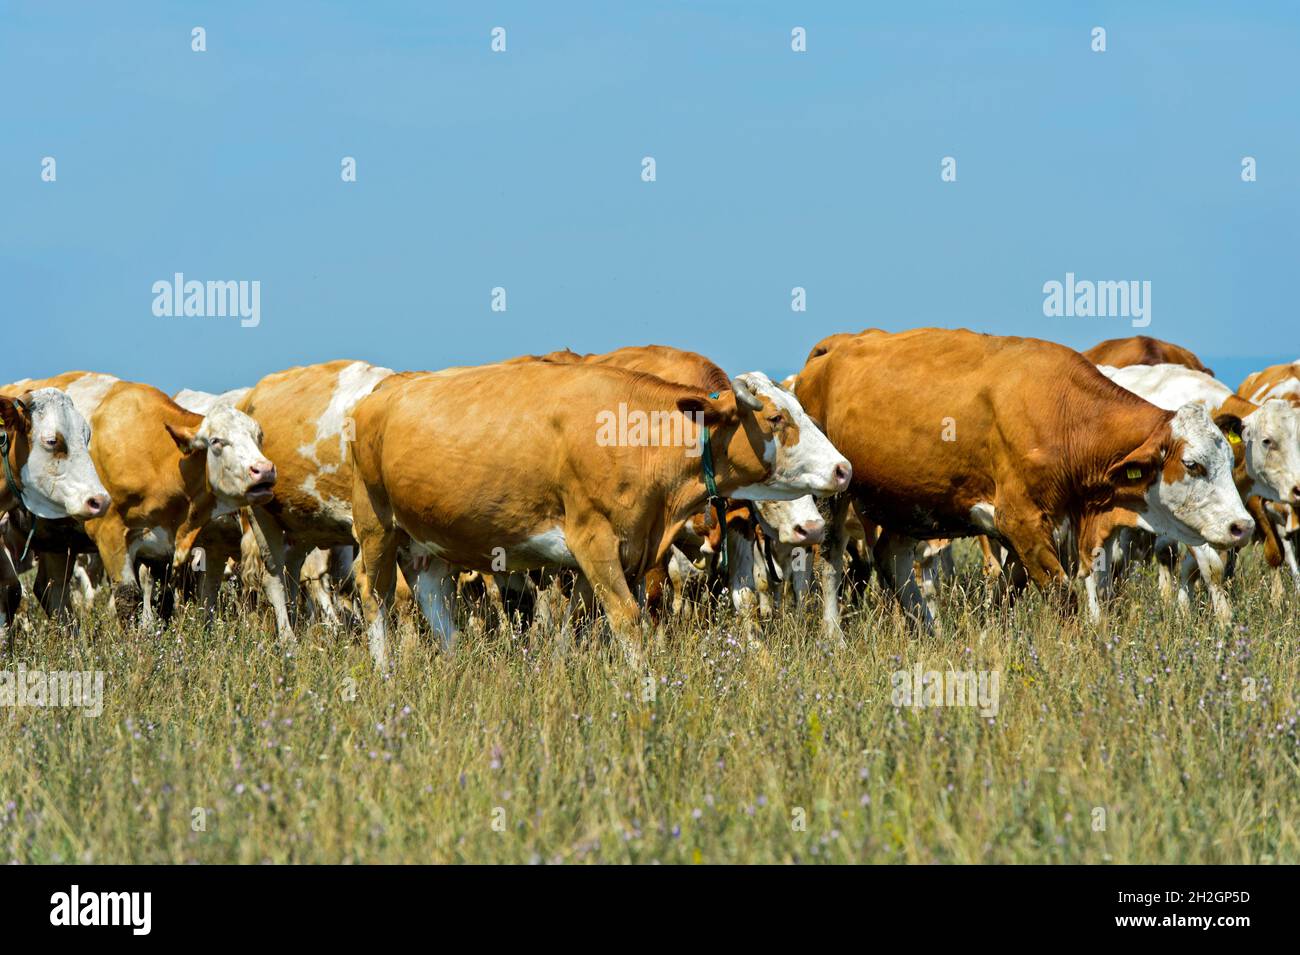 Troupeau de bovins Simmental sur un pâturage dans la zone de conservation de Langen Lacke, Neusiedlersee – Parc national Seewinkel, Apetlon, Burgenland, Autriche Banque D'Images